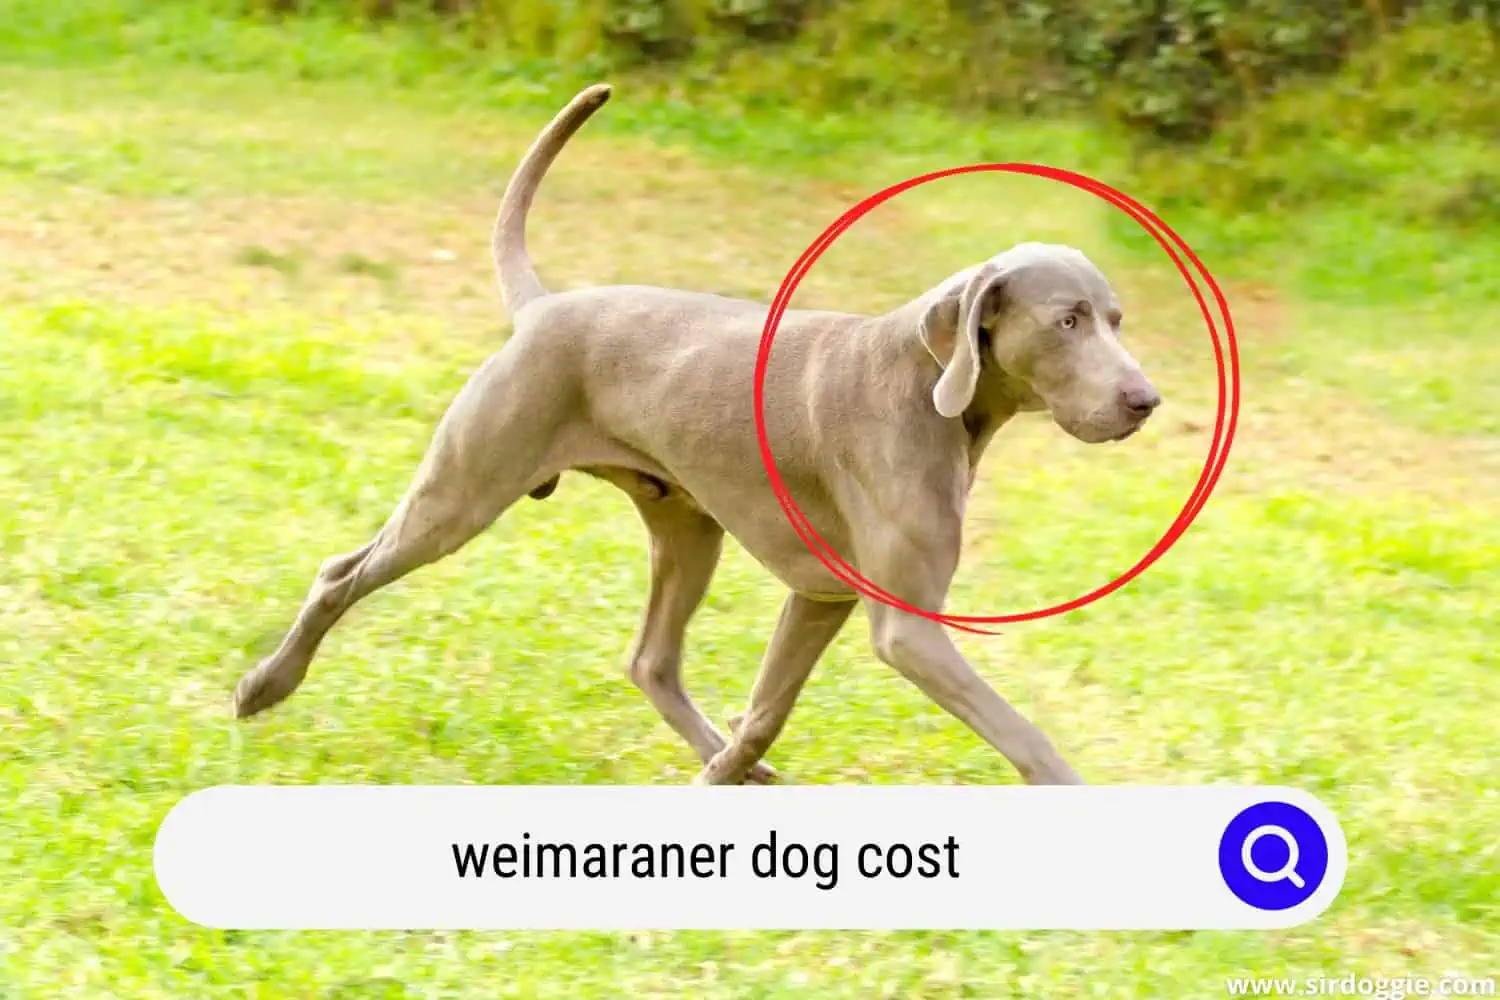 Weimaraner dog cost